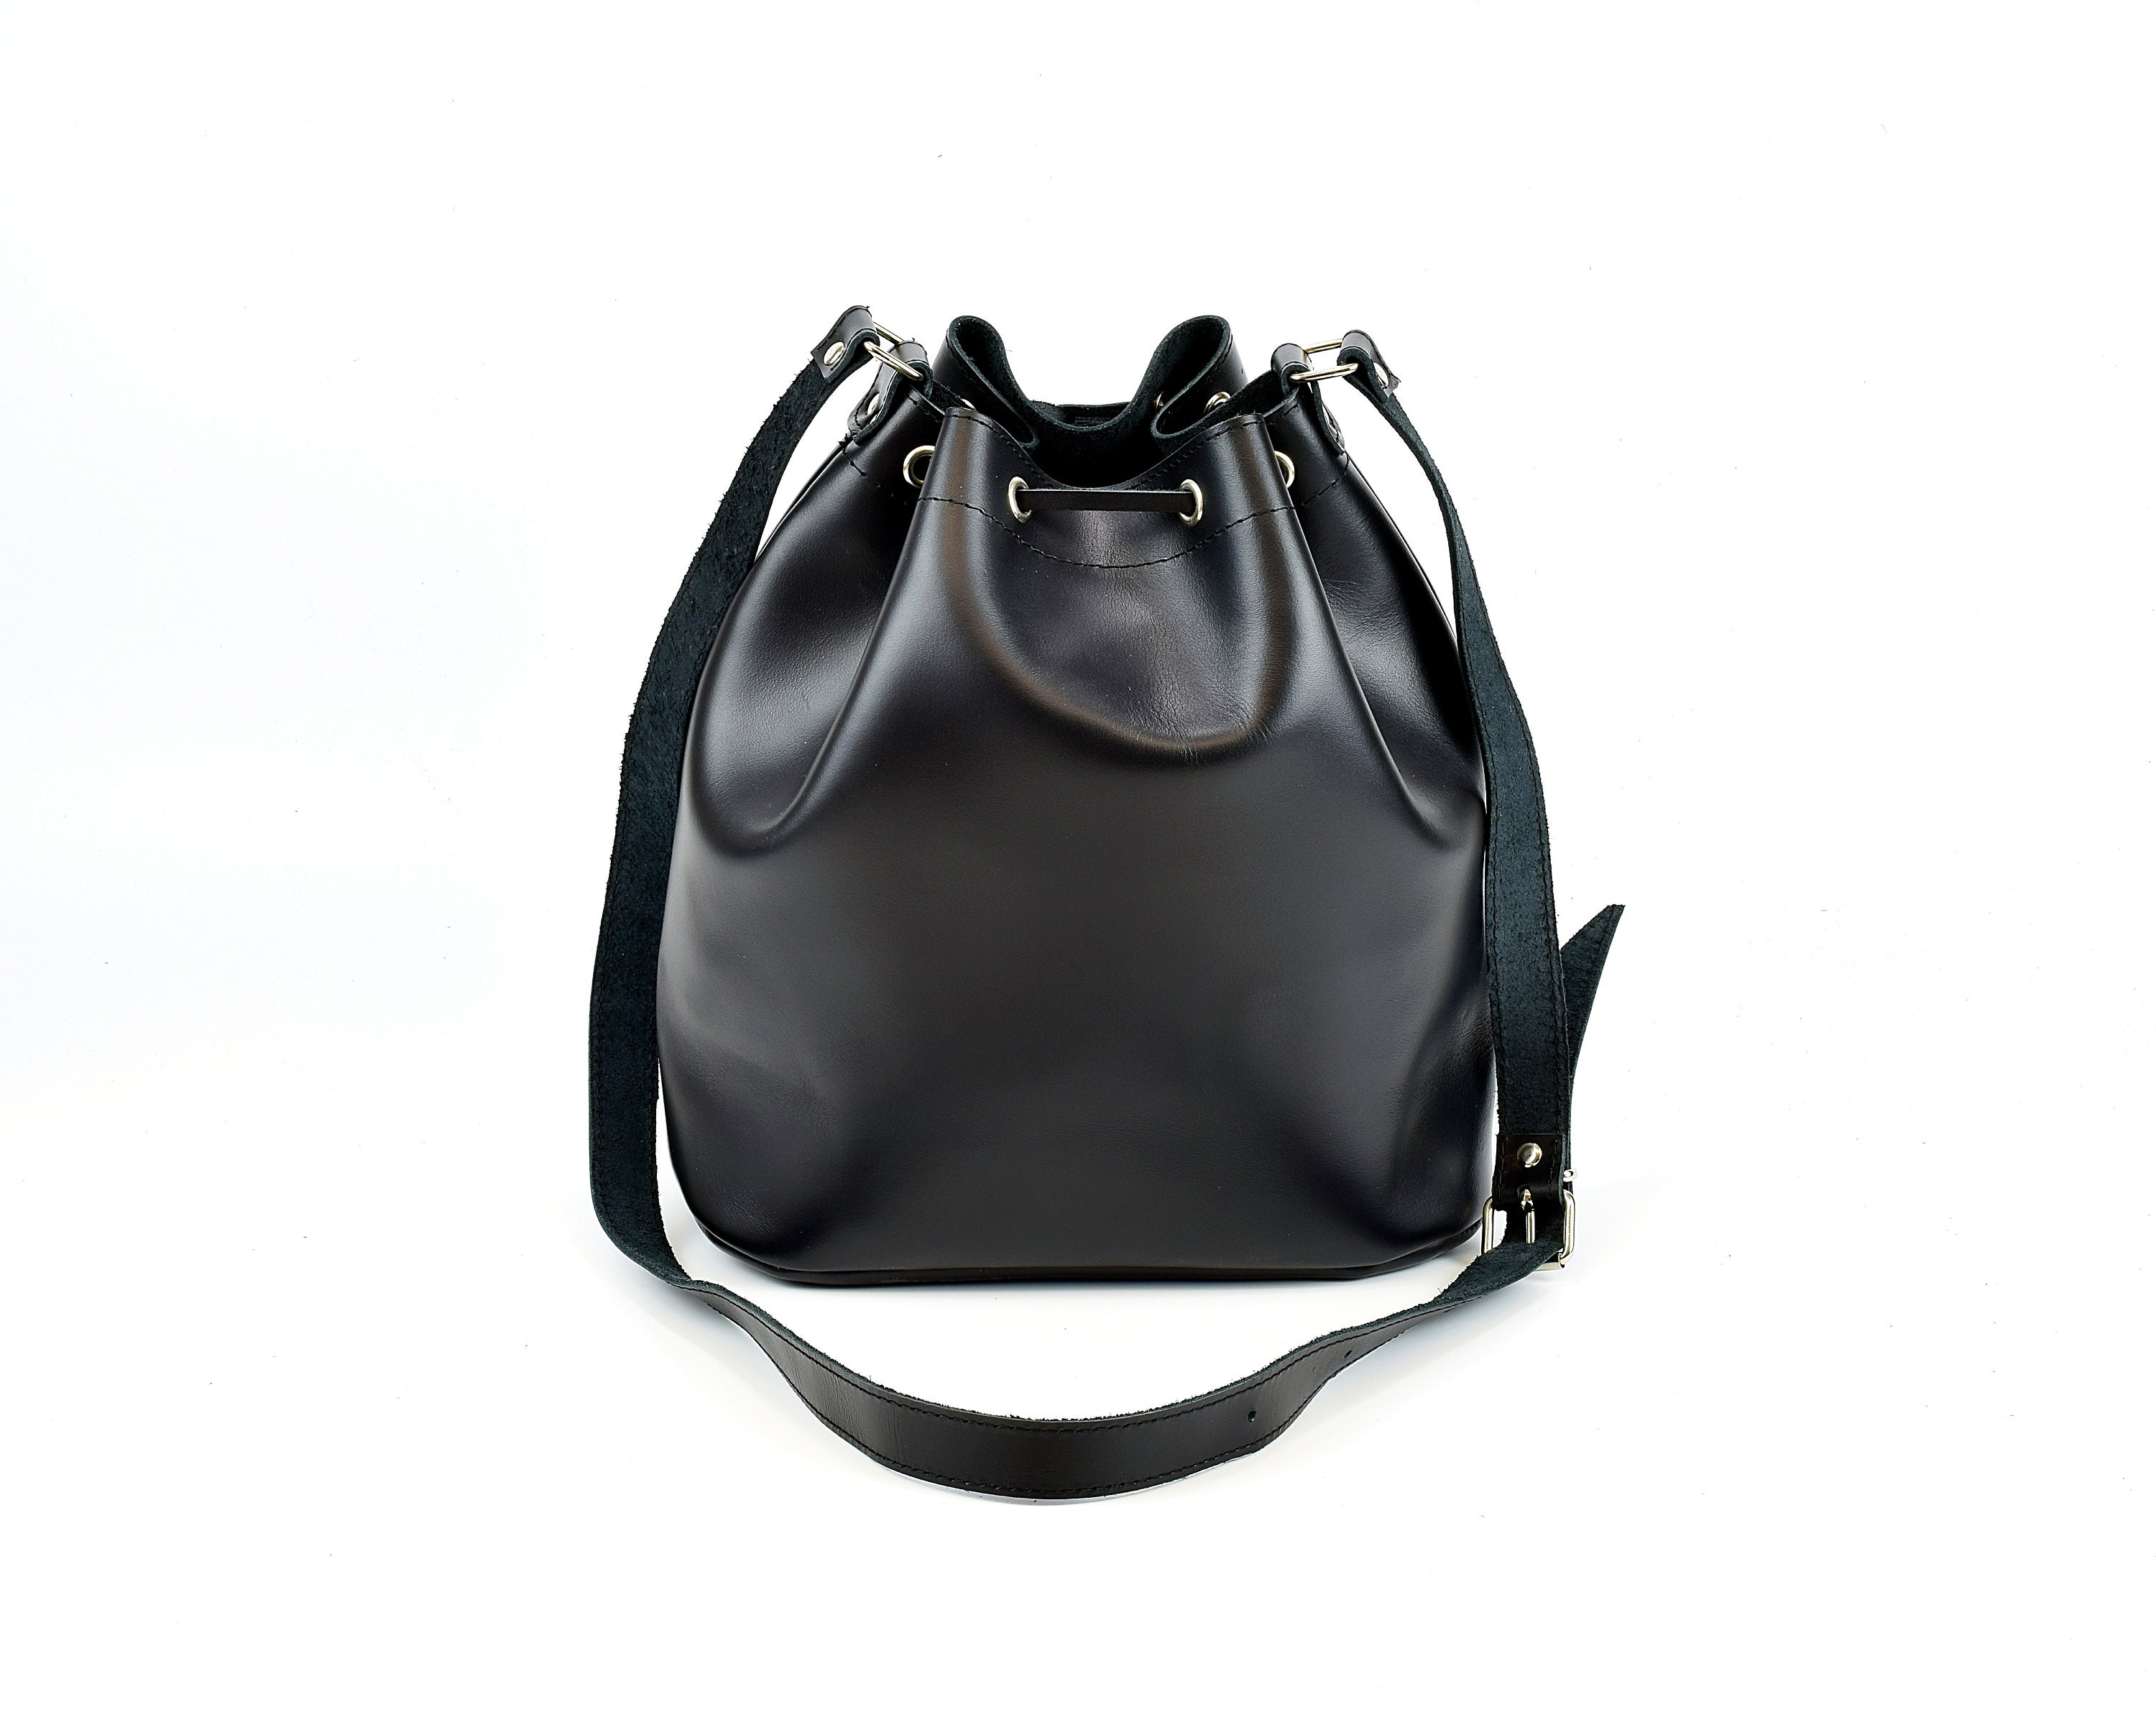 Black Leather Bucket Bag Women's Shoulder Bag Handmade of - Etsy